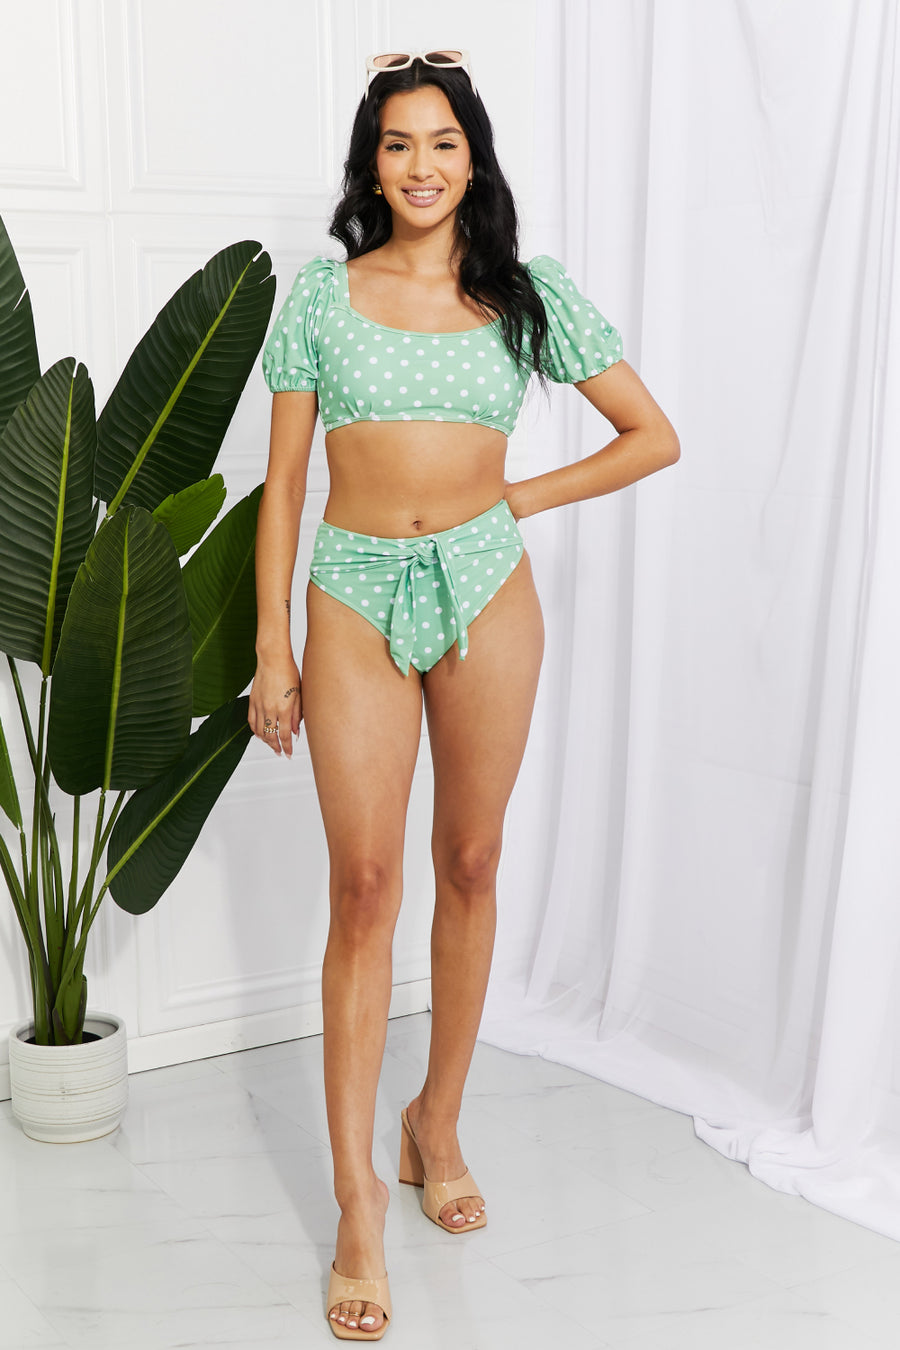 Marina West Swim Vacay Ready Puff Sleeve Bikini in Gum Leaf (S-2XL)